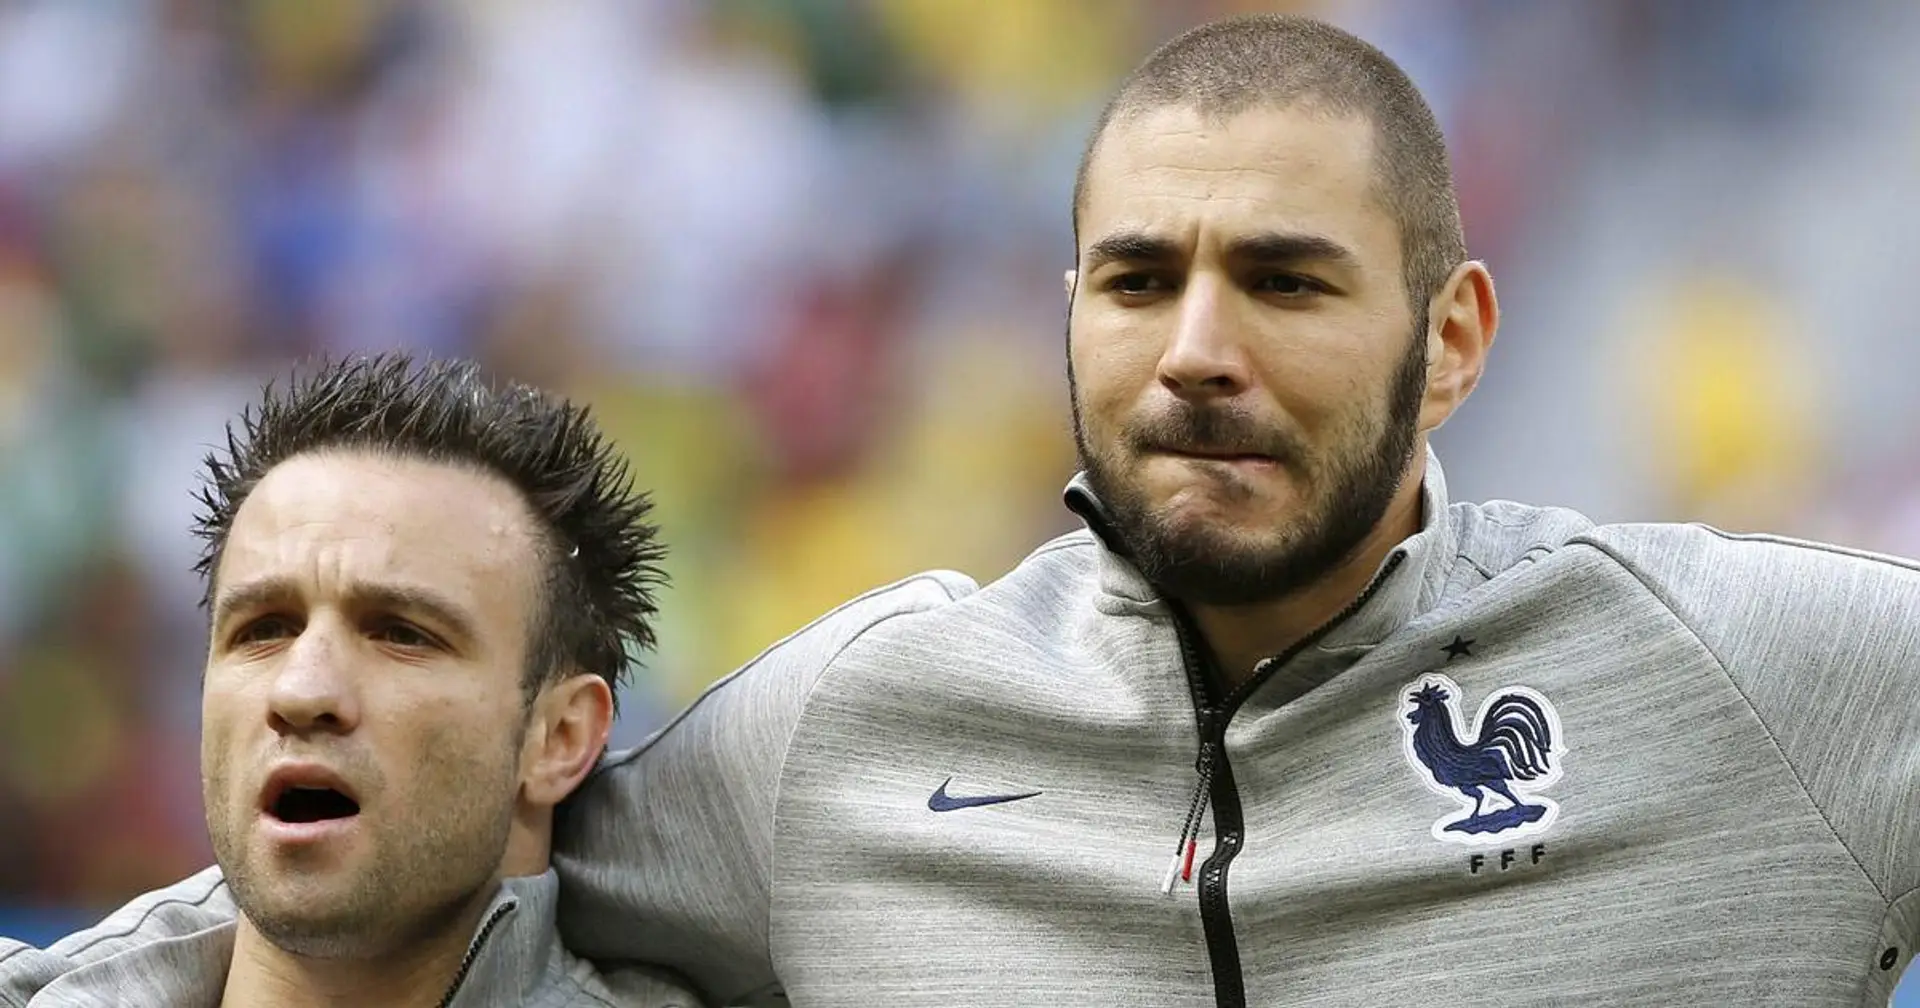 Confirmé: Karim Benzema sera jugé pour son implication présumée dans le scandale du chantage de Mathieu Valbuena